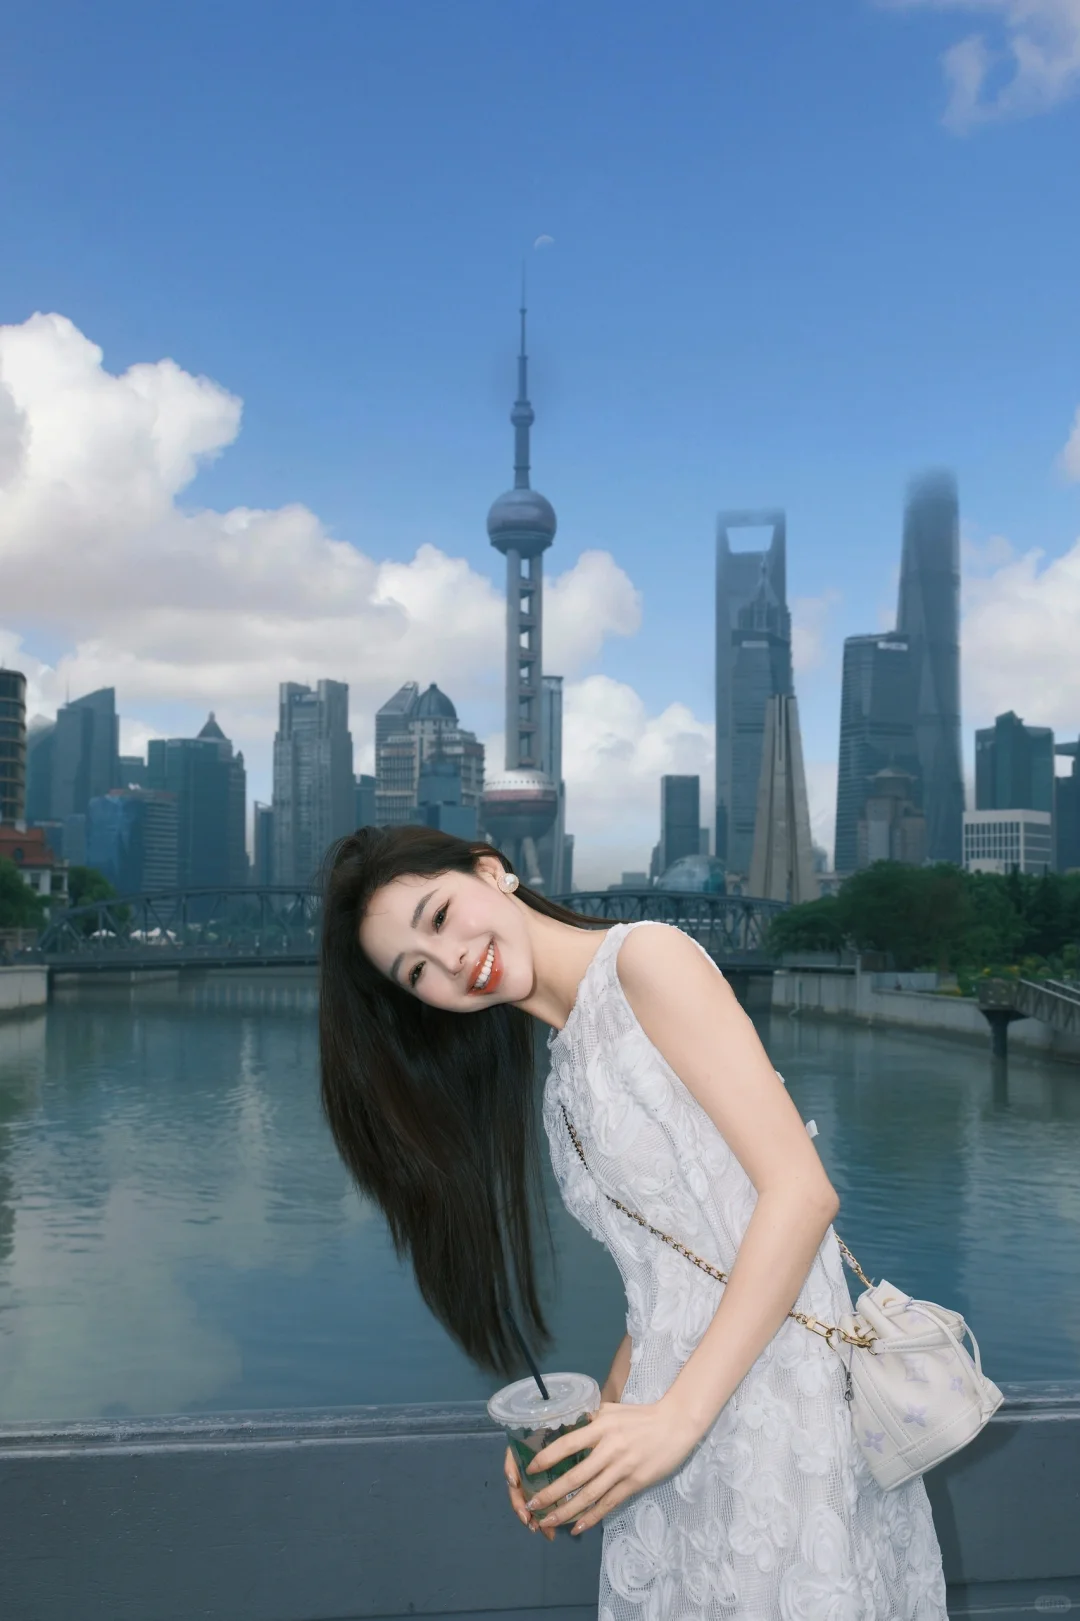 庞懿心 来上海感受乍浦路桥的浪漫 - 小红书